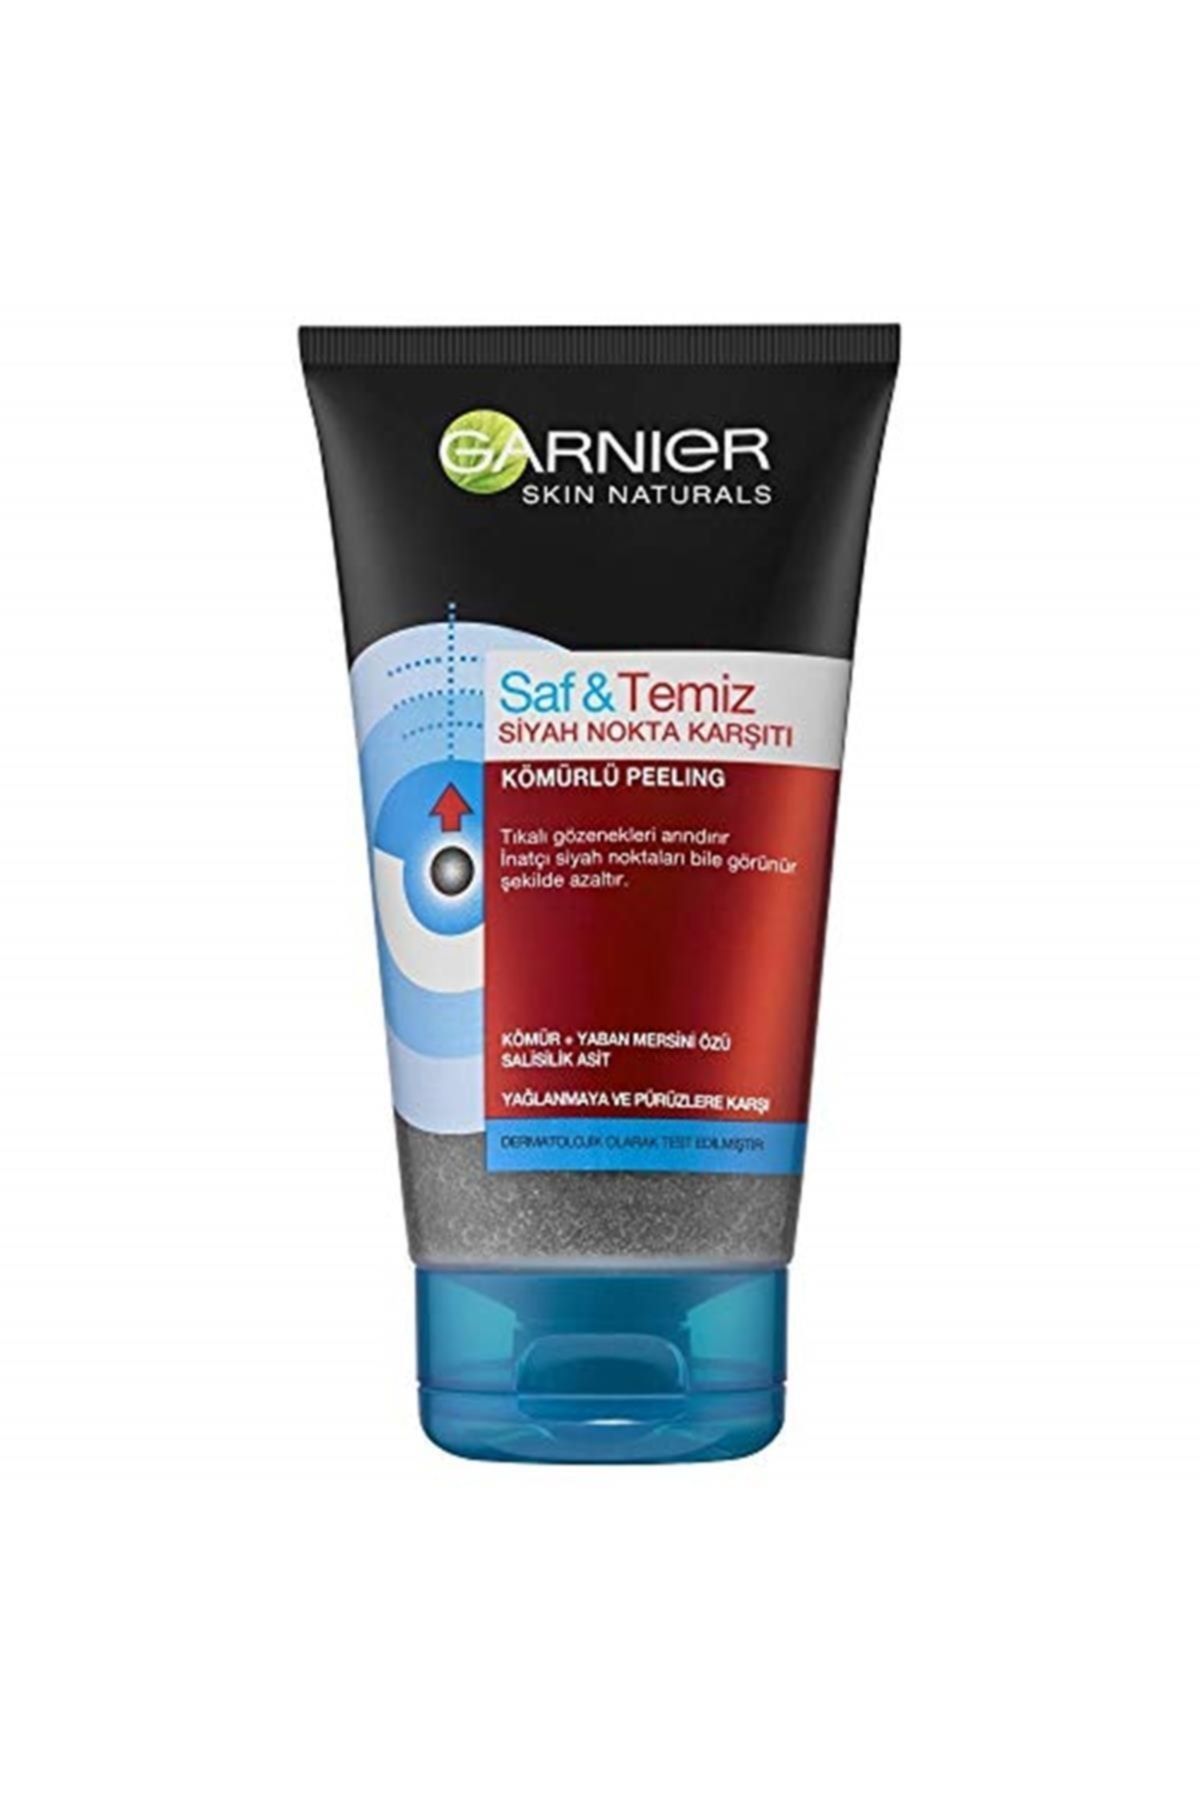 Garnier Skin Naturals Saf & Temiz Siyah Nokta Karşıtı Kömürlü Peeling 150 ml